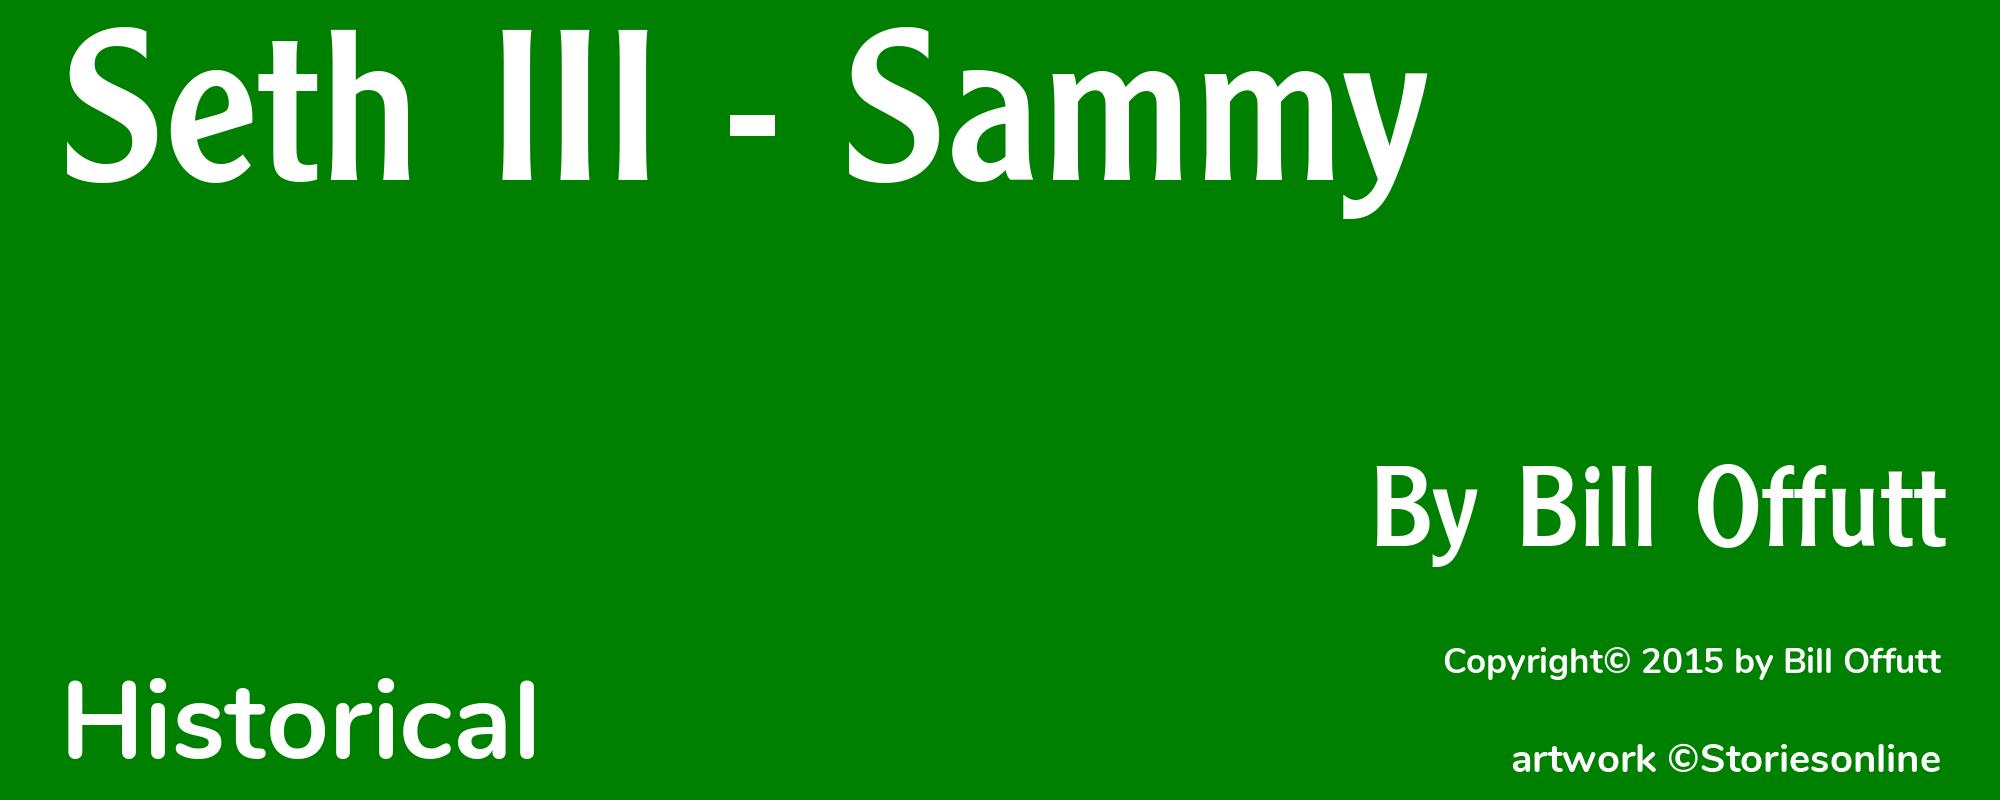 Seth III - Sammy - Cover